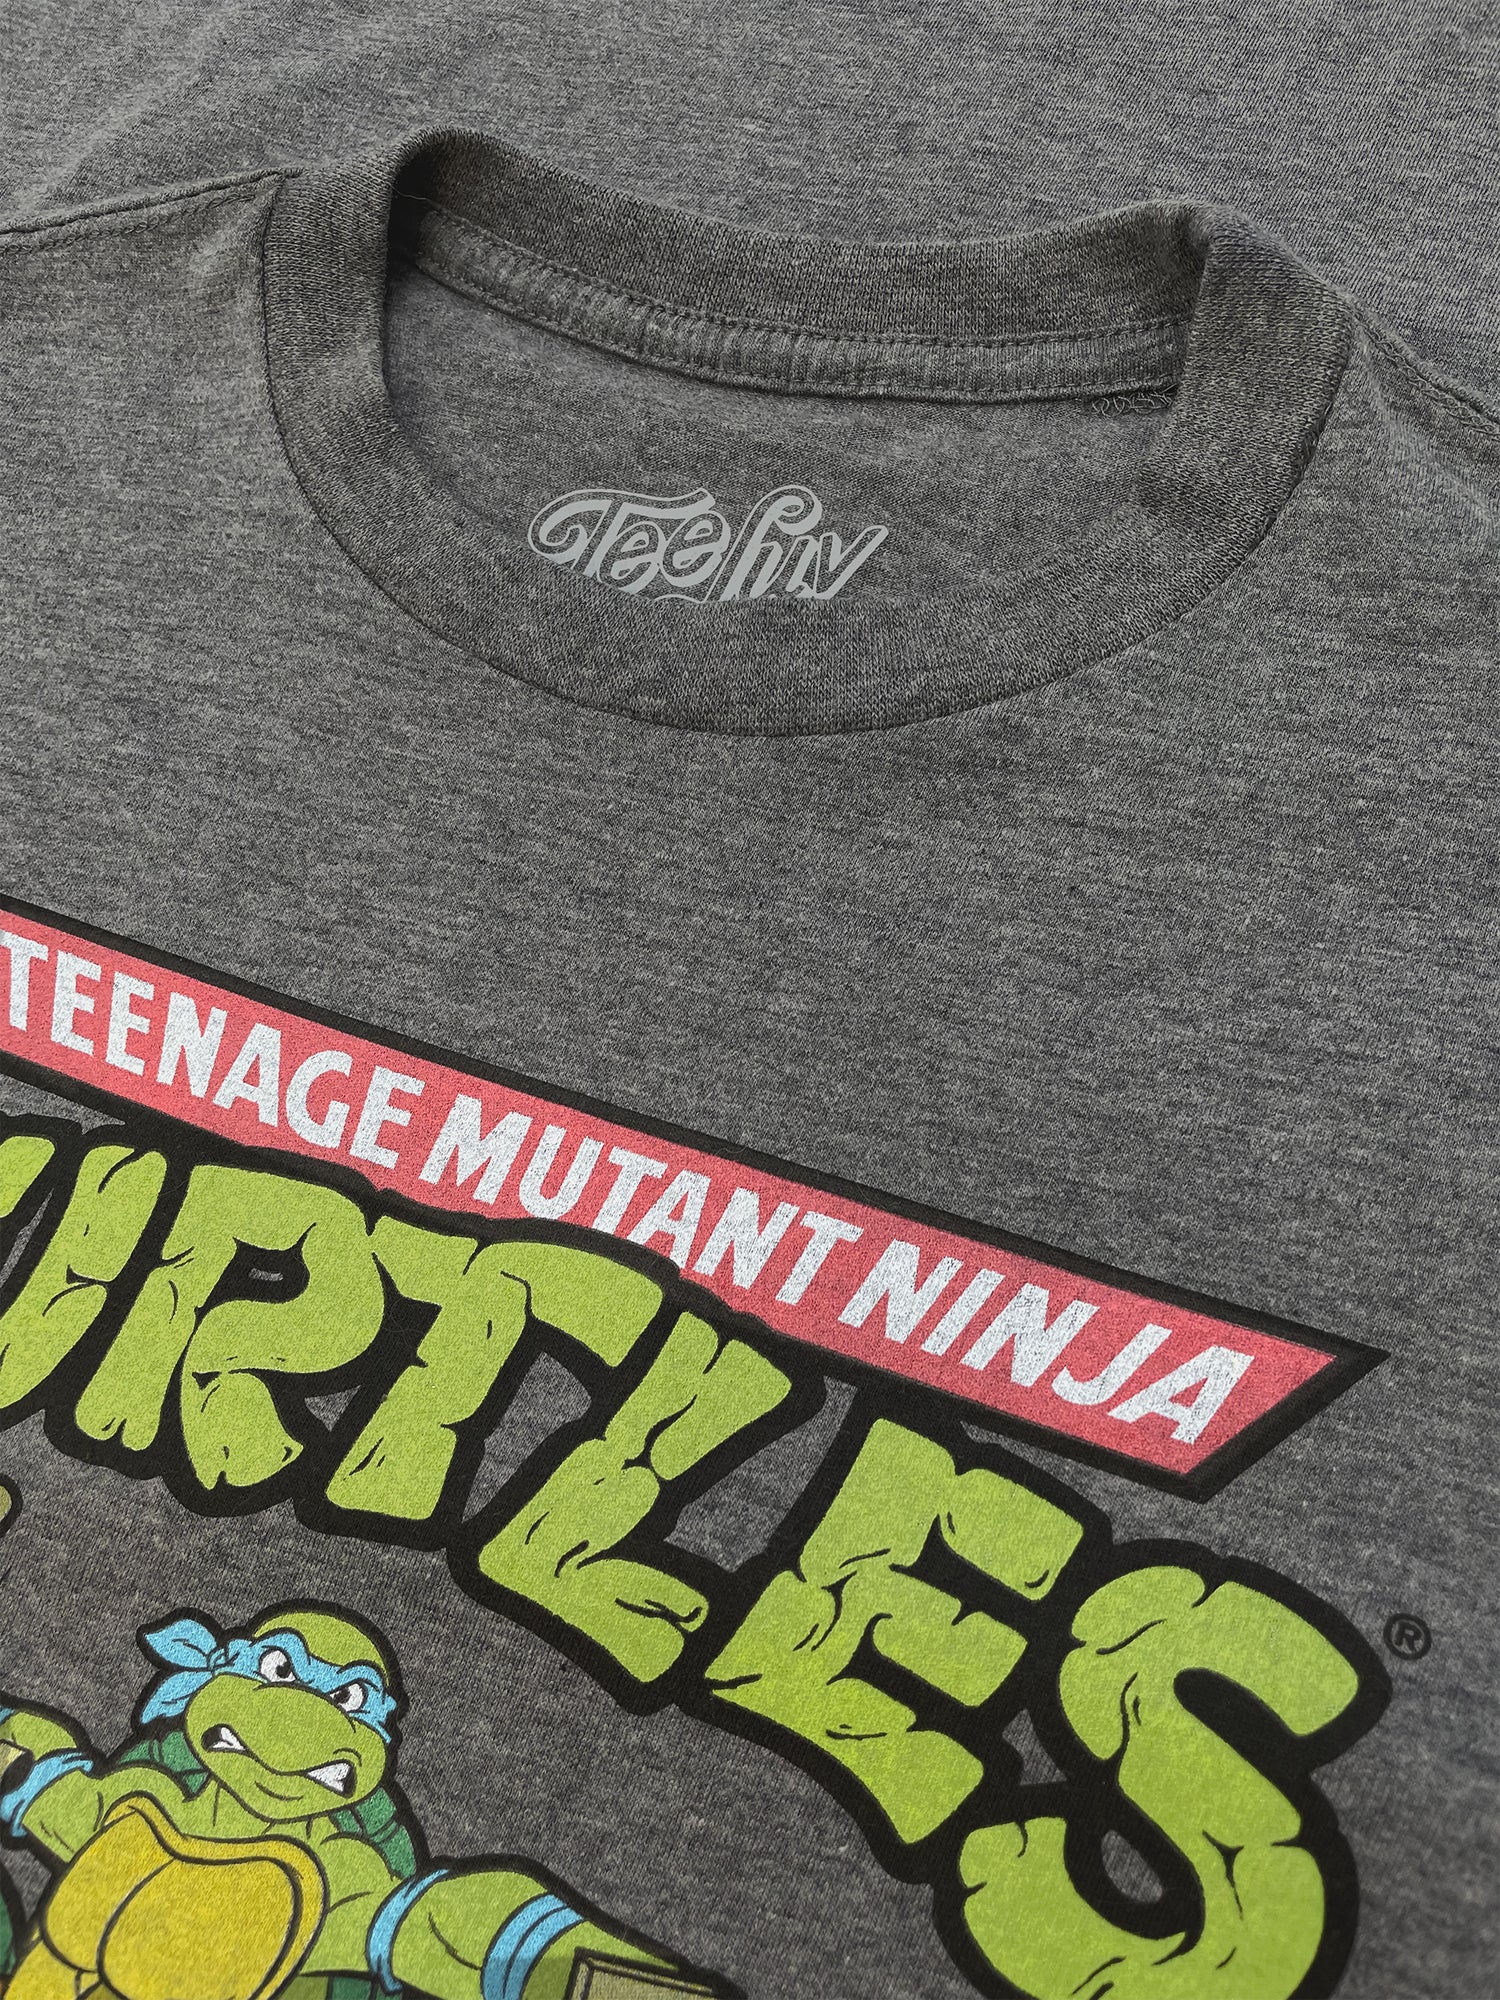 Tee Luv Men's Faded Teenage Mutant Ninja Turtles Shirt